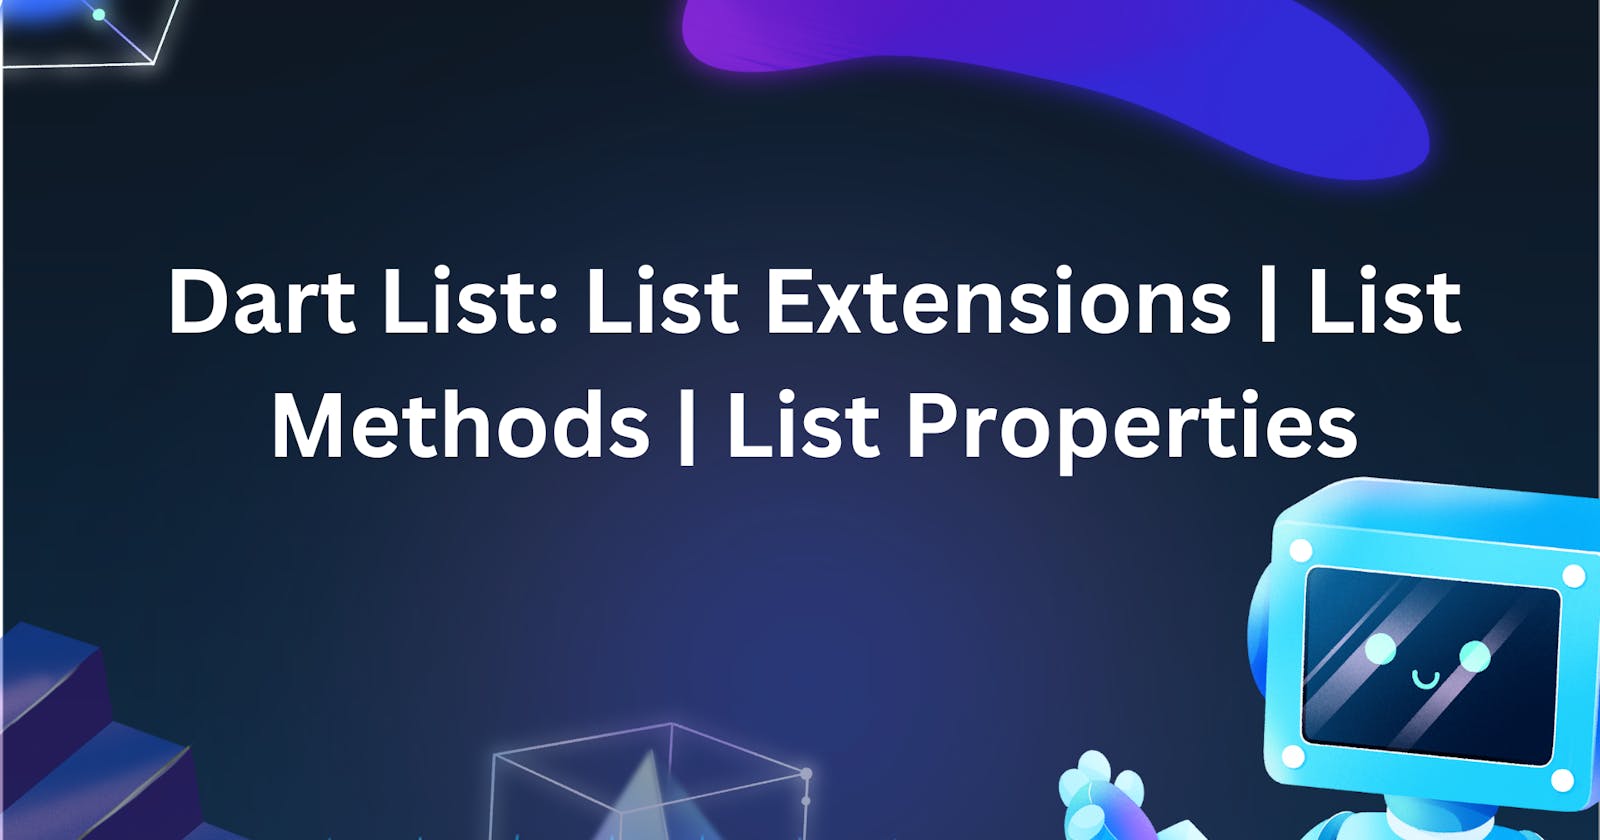 Dart List: List Extensions | List Methods | List Properties